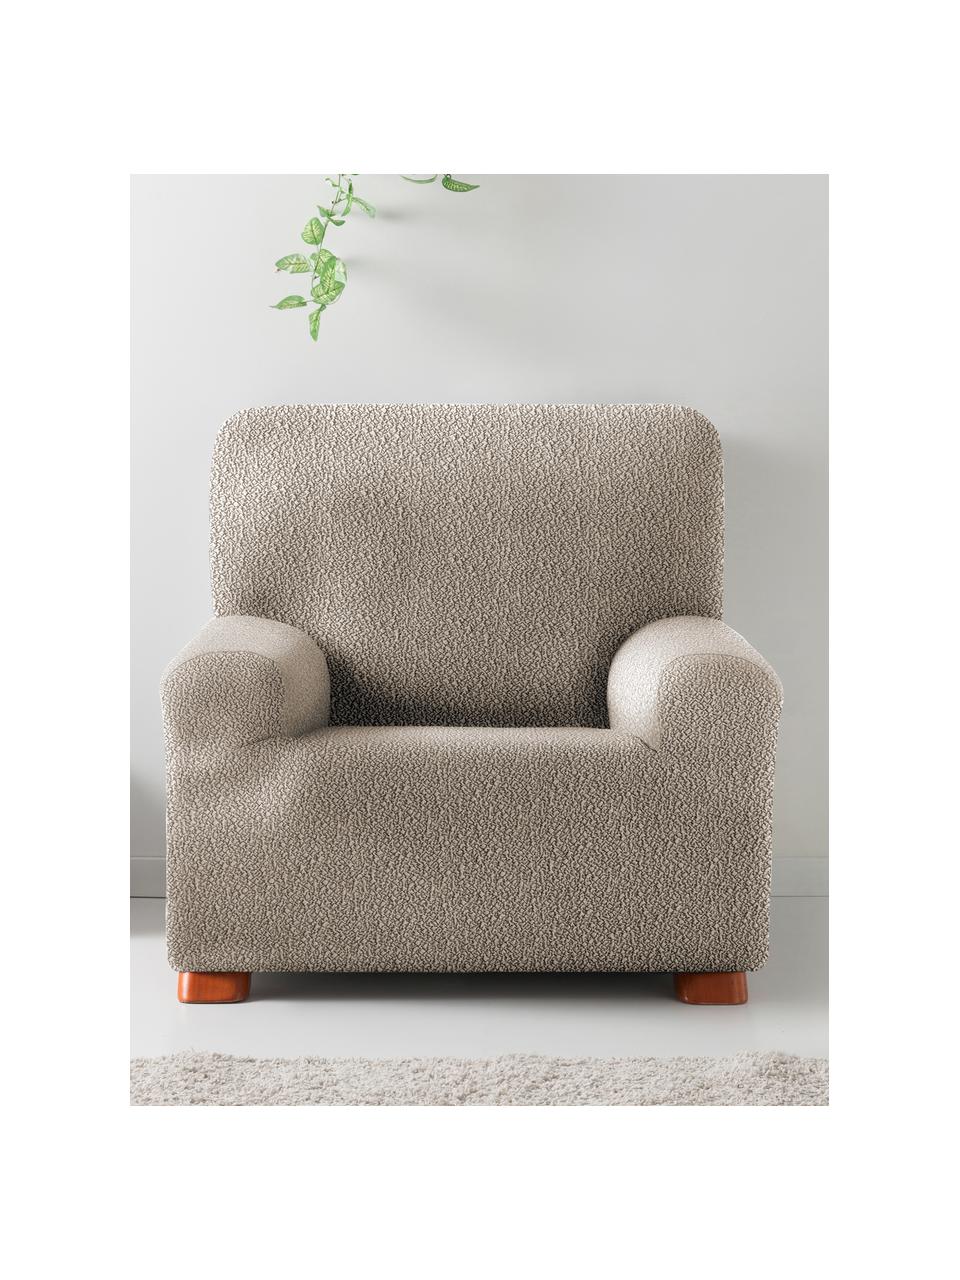 Pokrowiec na fotel Roc, 55% poliester, 35% bawełna, 10% elastomer, Beżowy, S 130 x W 120 cm